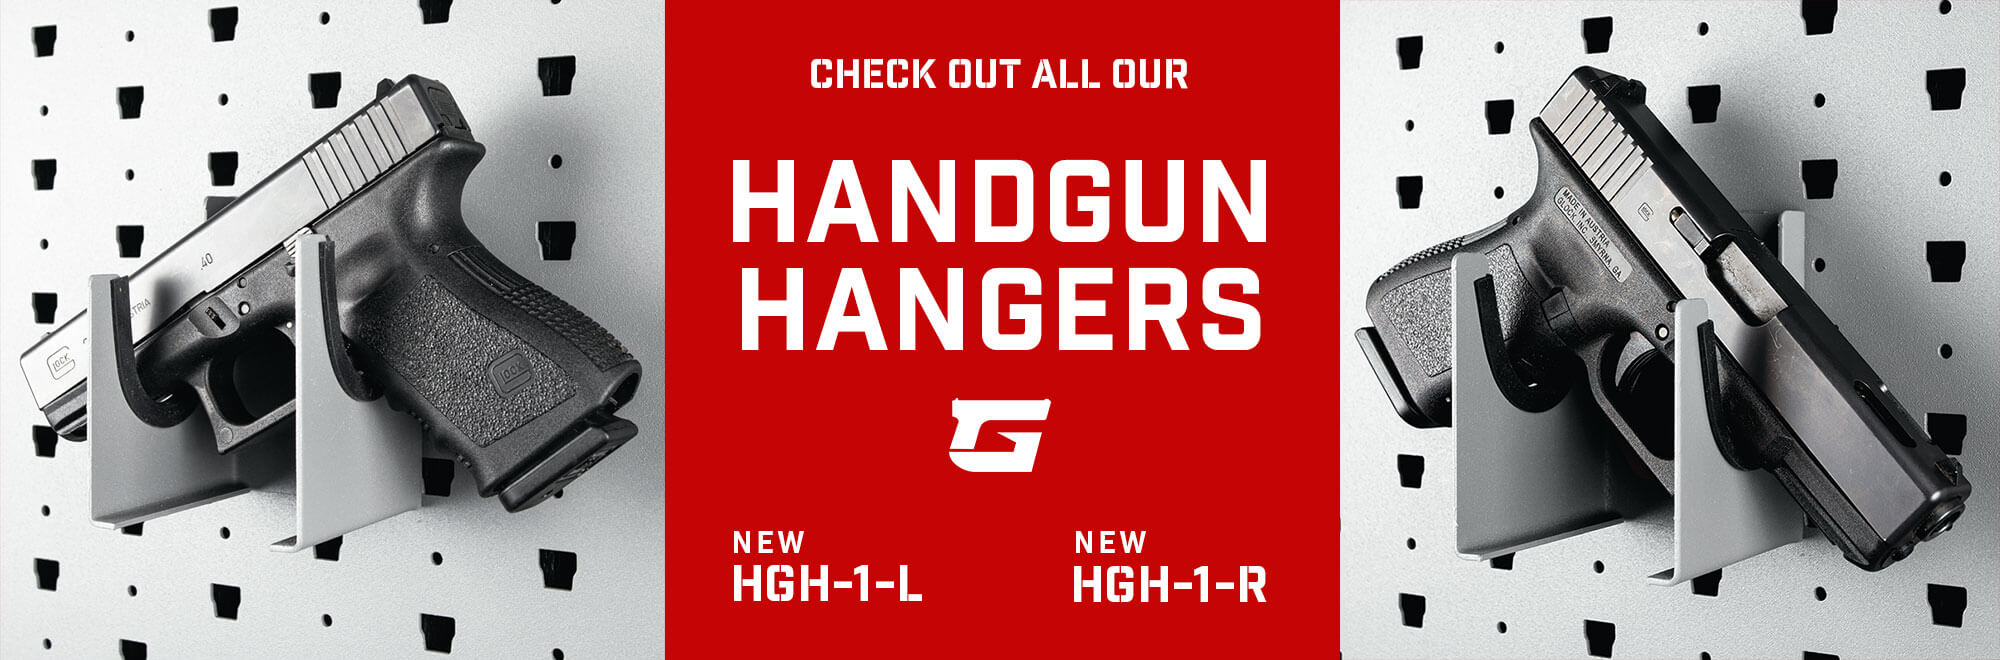 Left and right handgun hangers